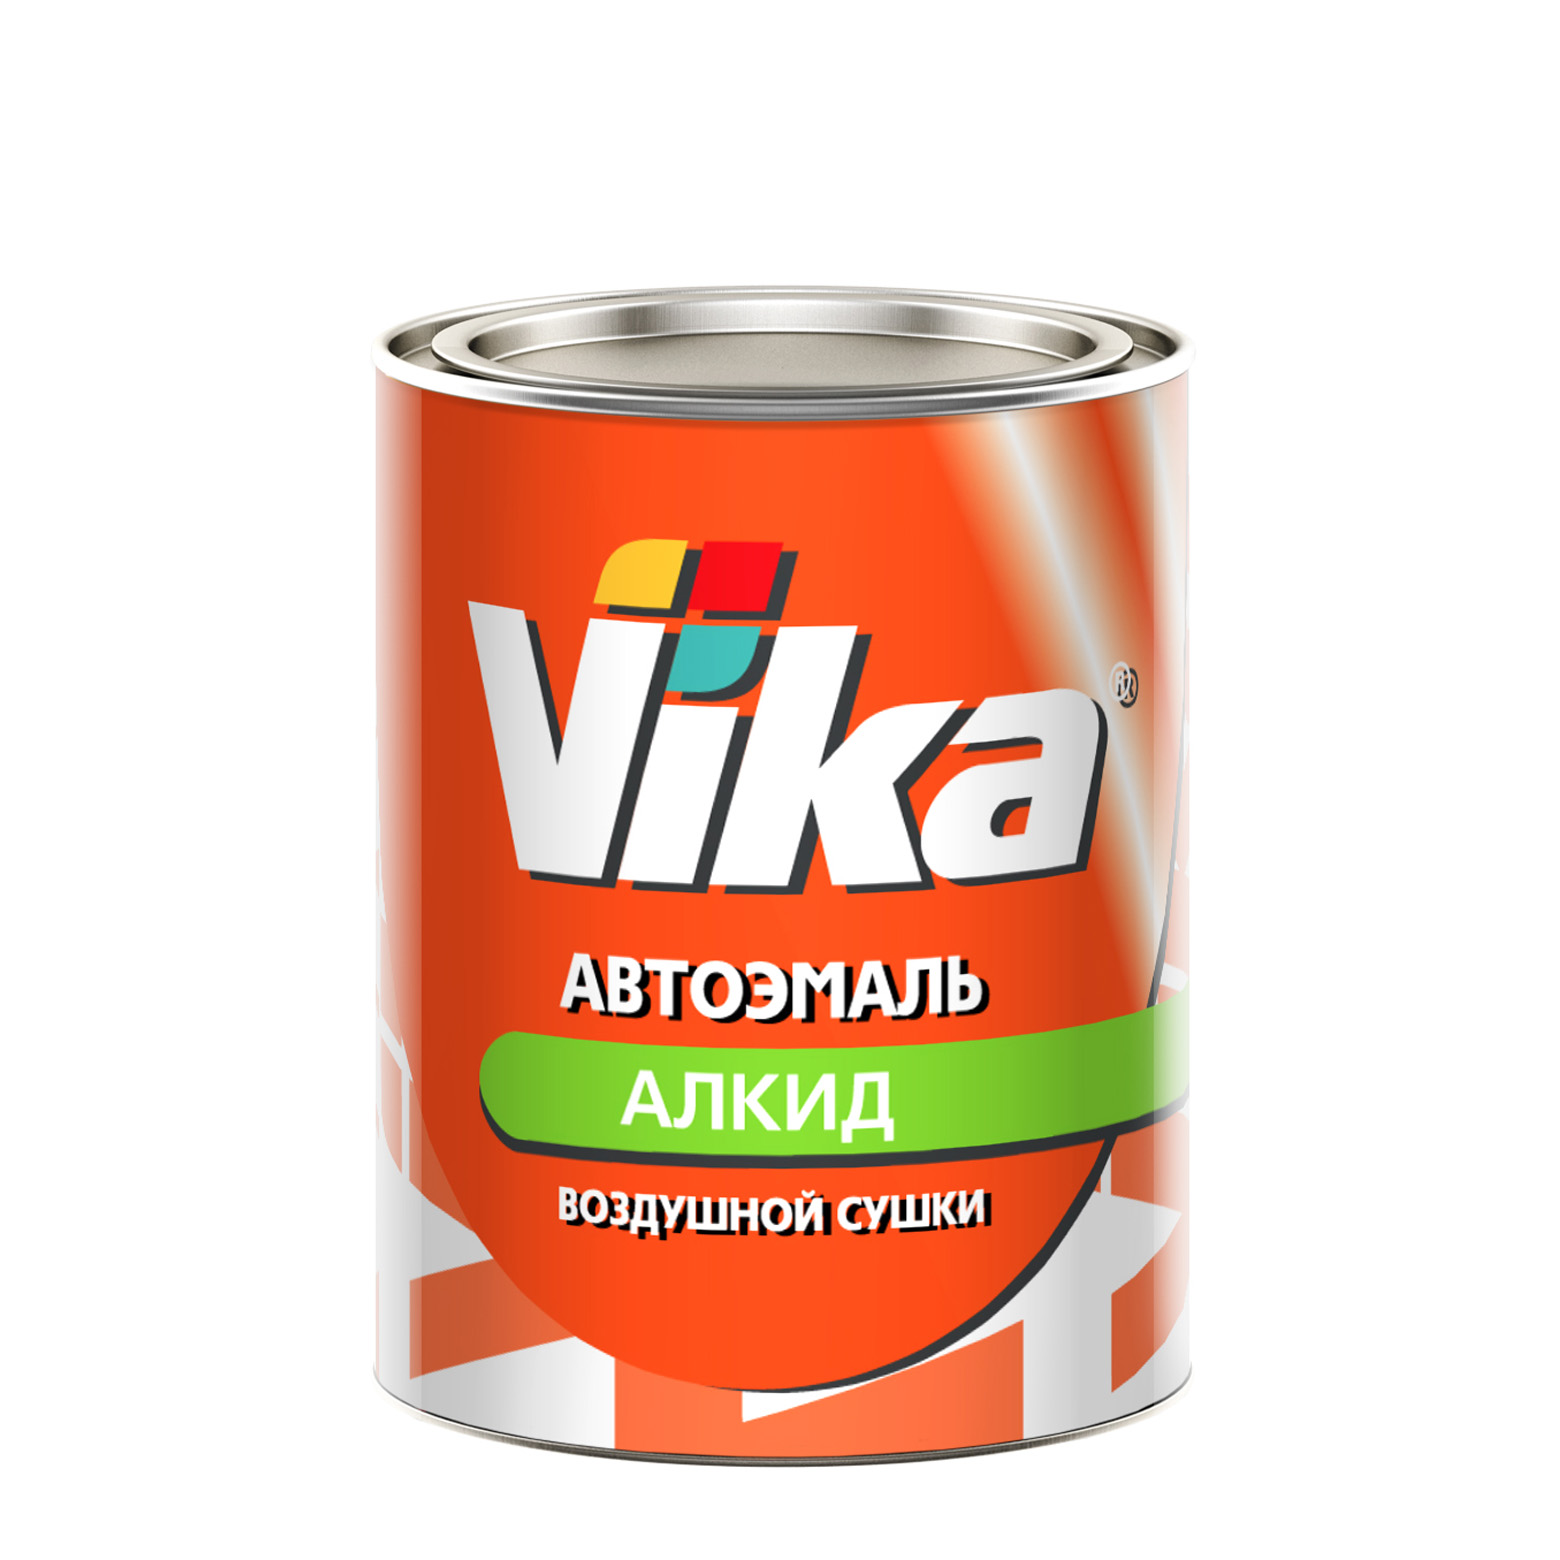 Фото 1 - Автоэмаль Vika-60, цвет 601 Чёрная алкидная глянцевая естественной сушки - 0,8 кг.